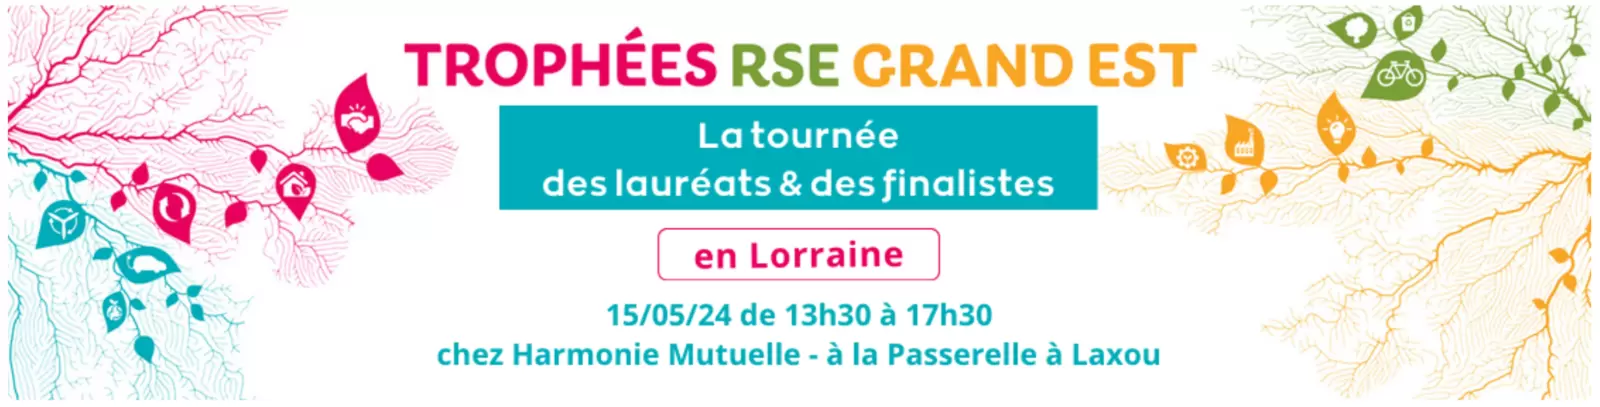 Trophée RSE Grand Est : La tournée des lauréats et finalistes en Lorraine